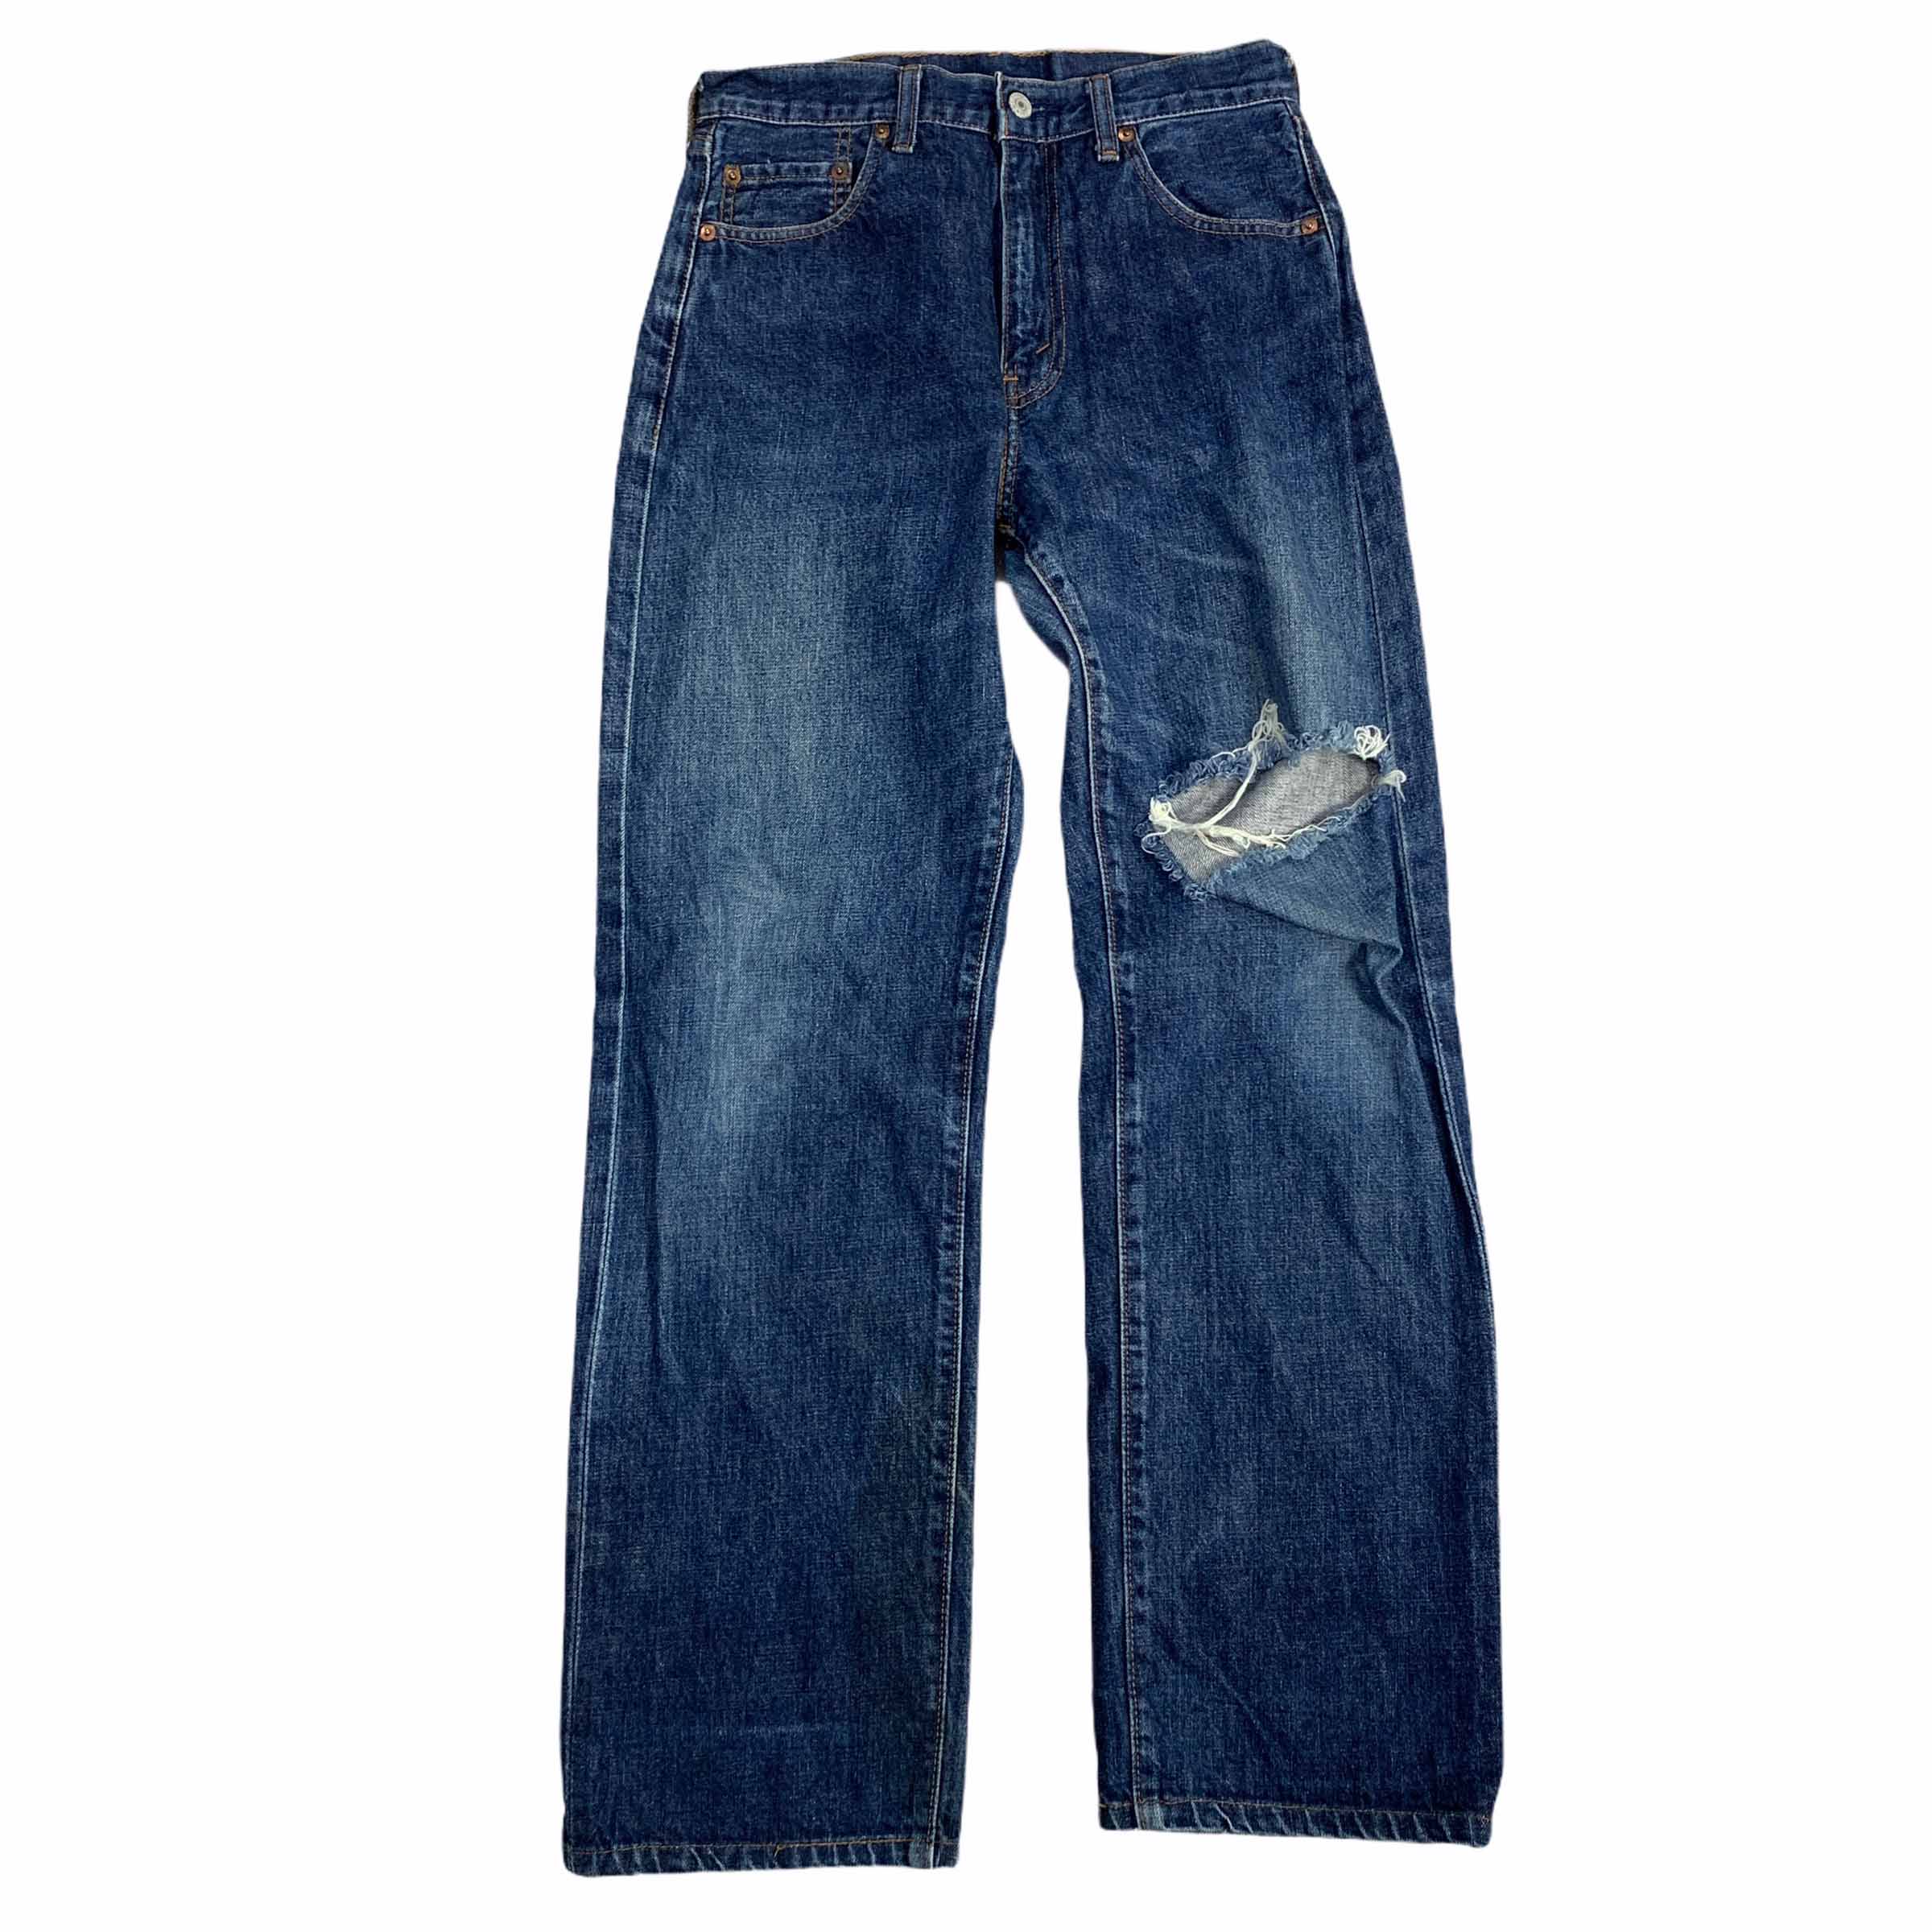 [Levis] (Vintage) 502 Denim Pants - Size 30/34